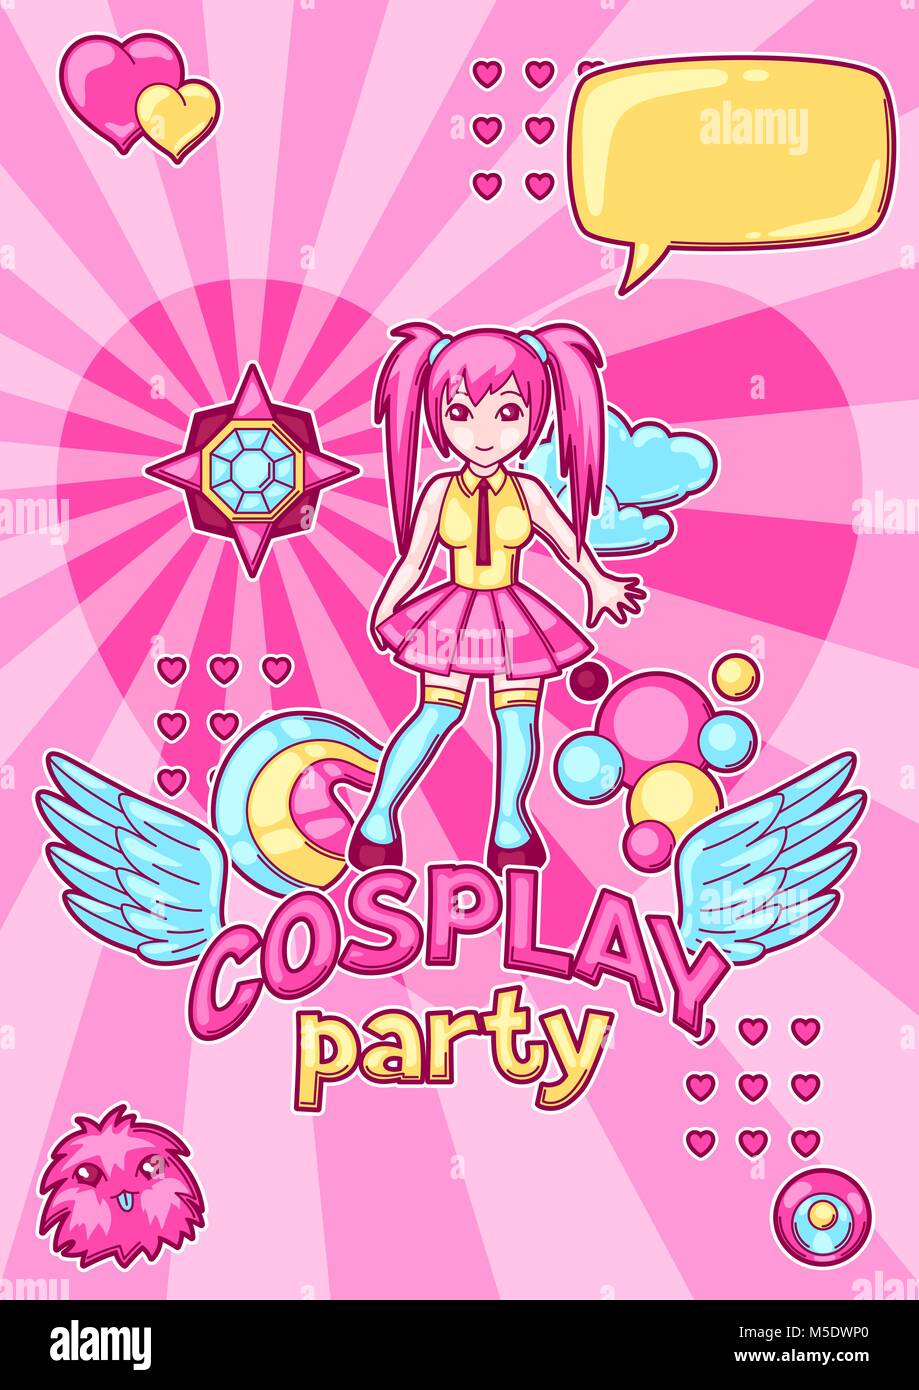 Japanischen Anime Cosplay party Einladung. Niedlich kawaii Figuren und Elemente Stock Vektor